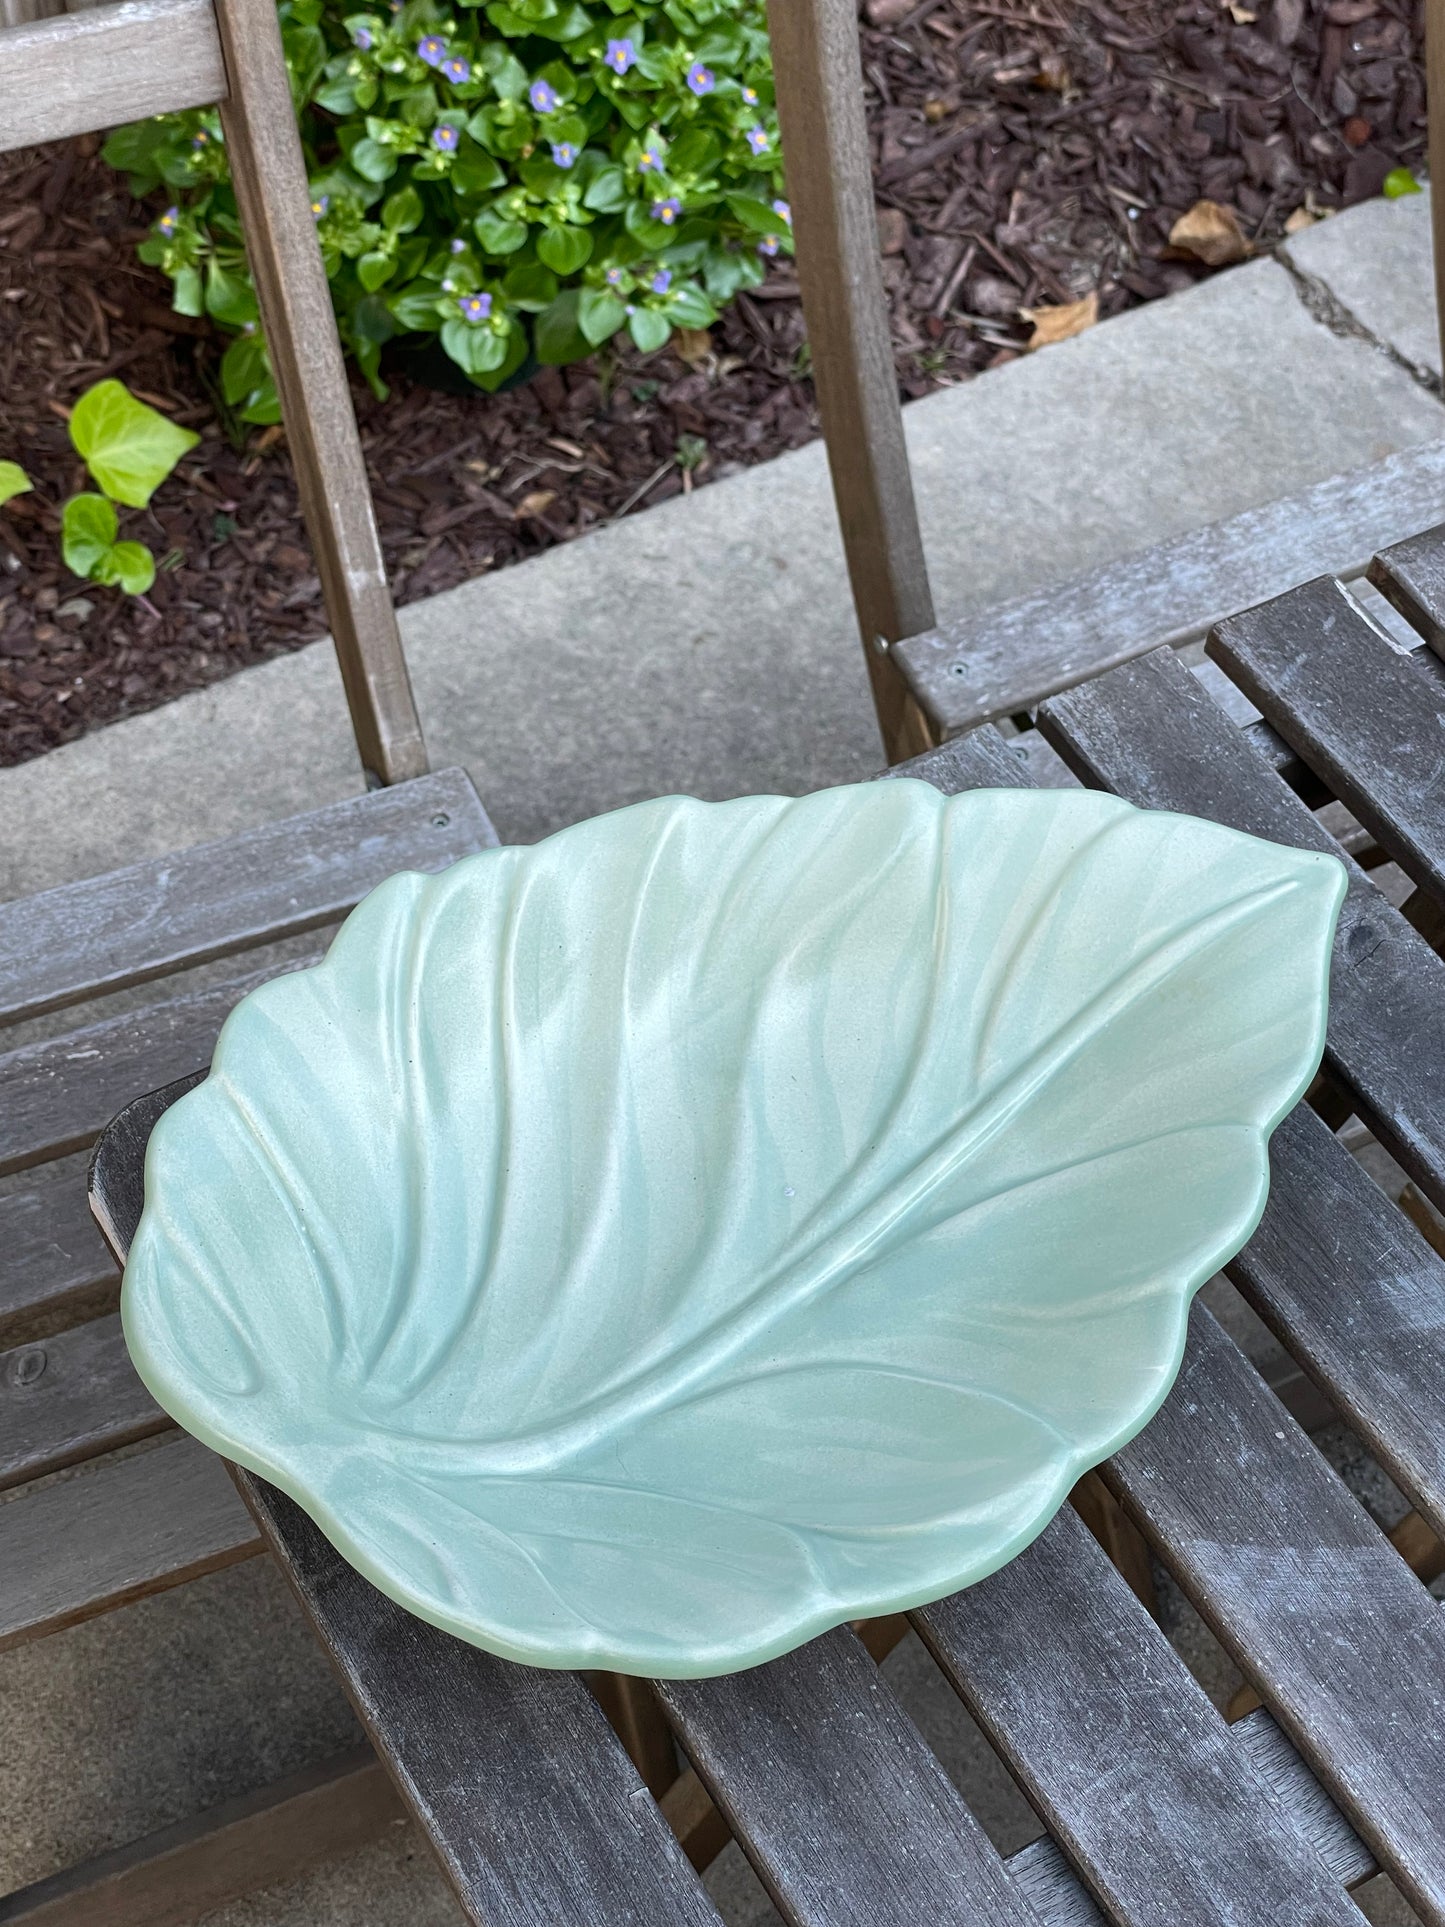 Green Leaf Serving Platter